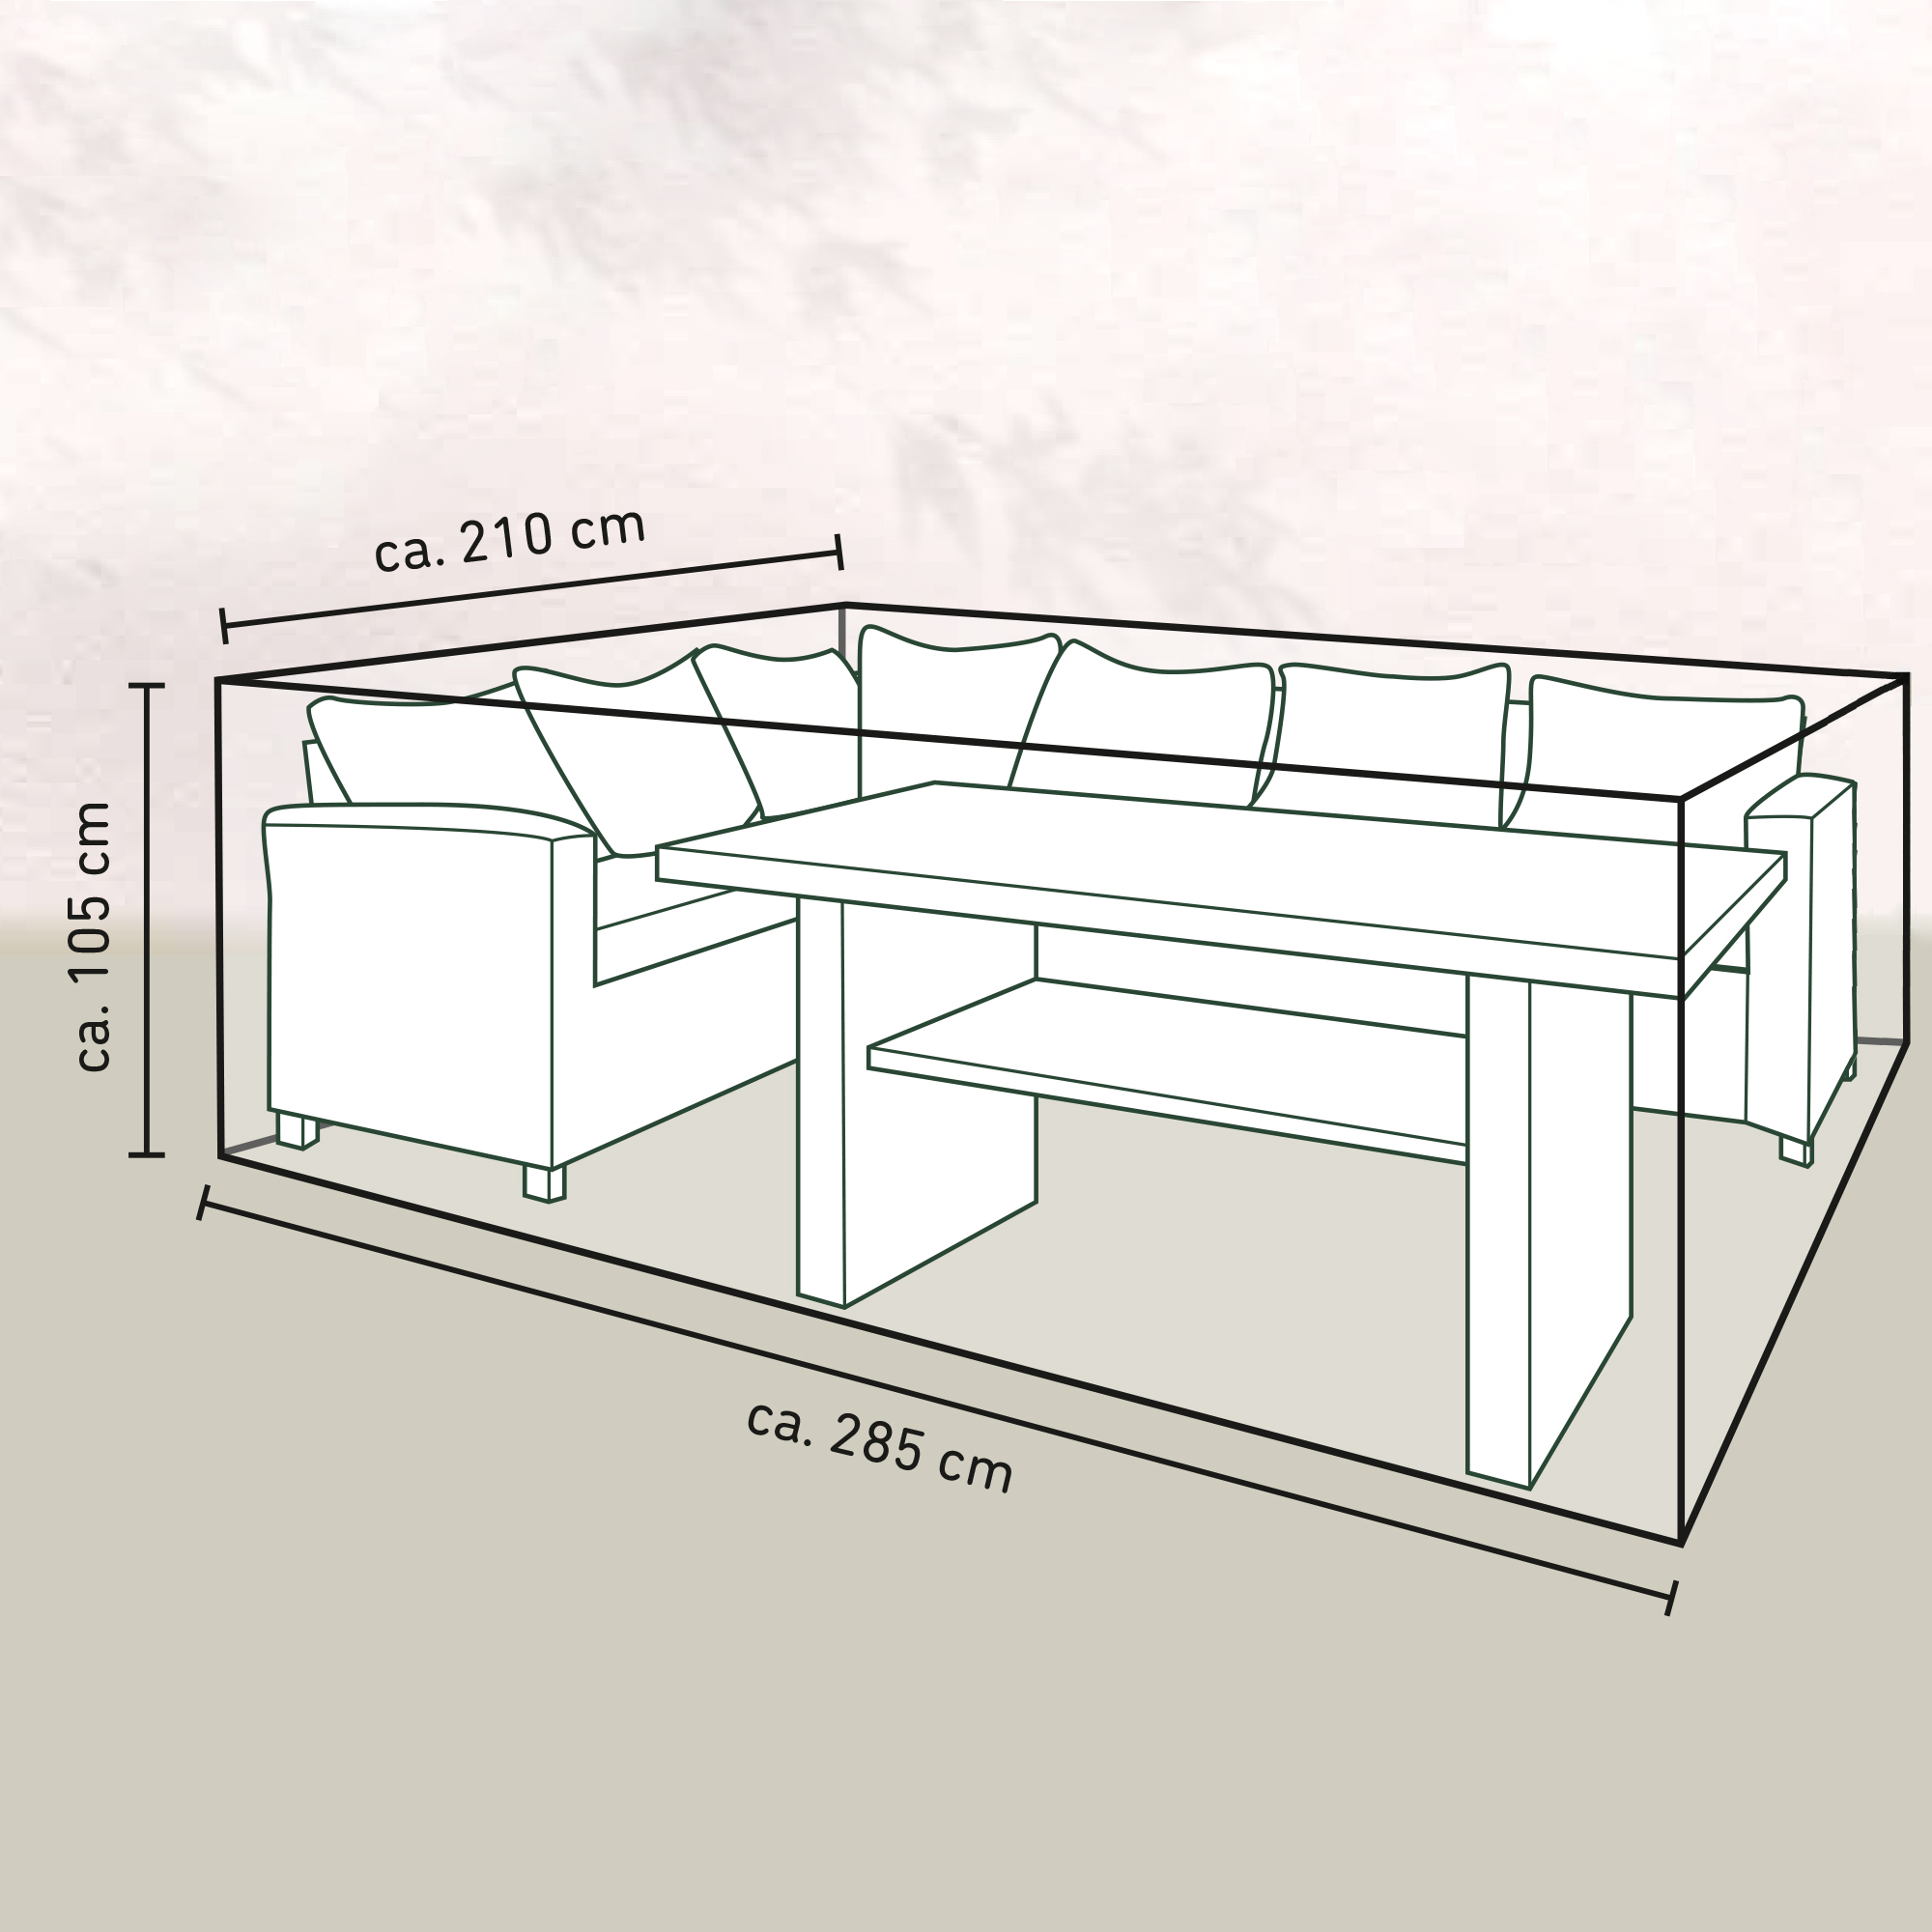 Lounge-Set-Schutzhülle für Möbel inkl. Tisch bis zu 2,8 m Länge + product picture